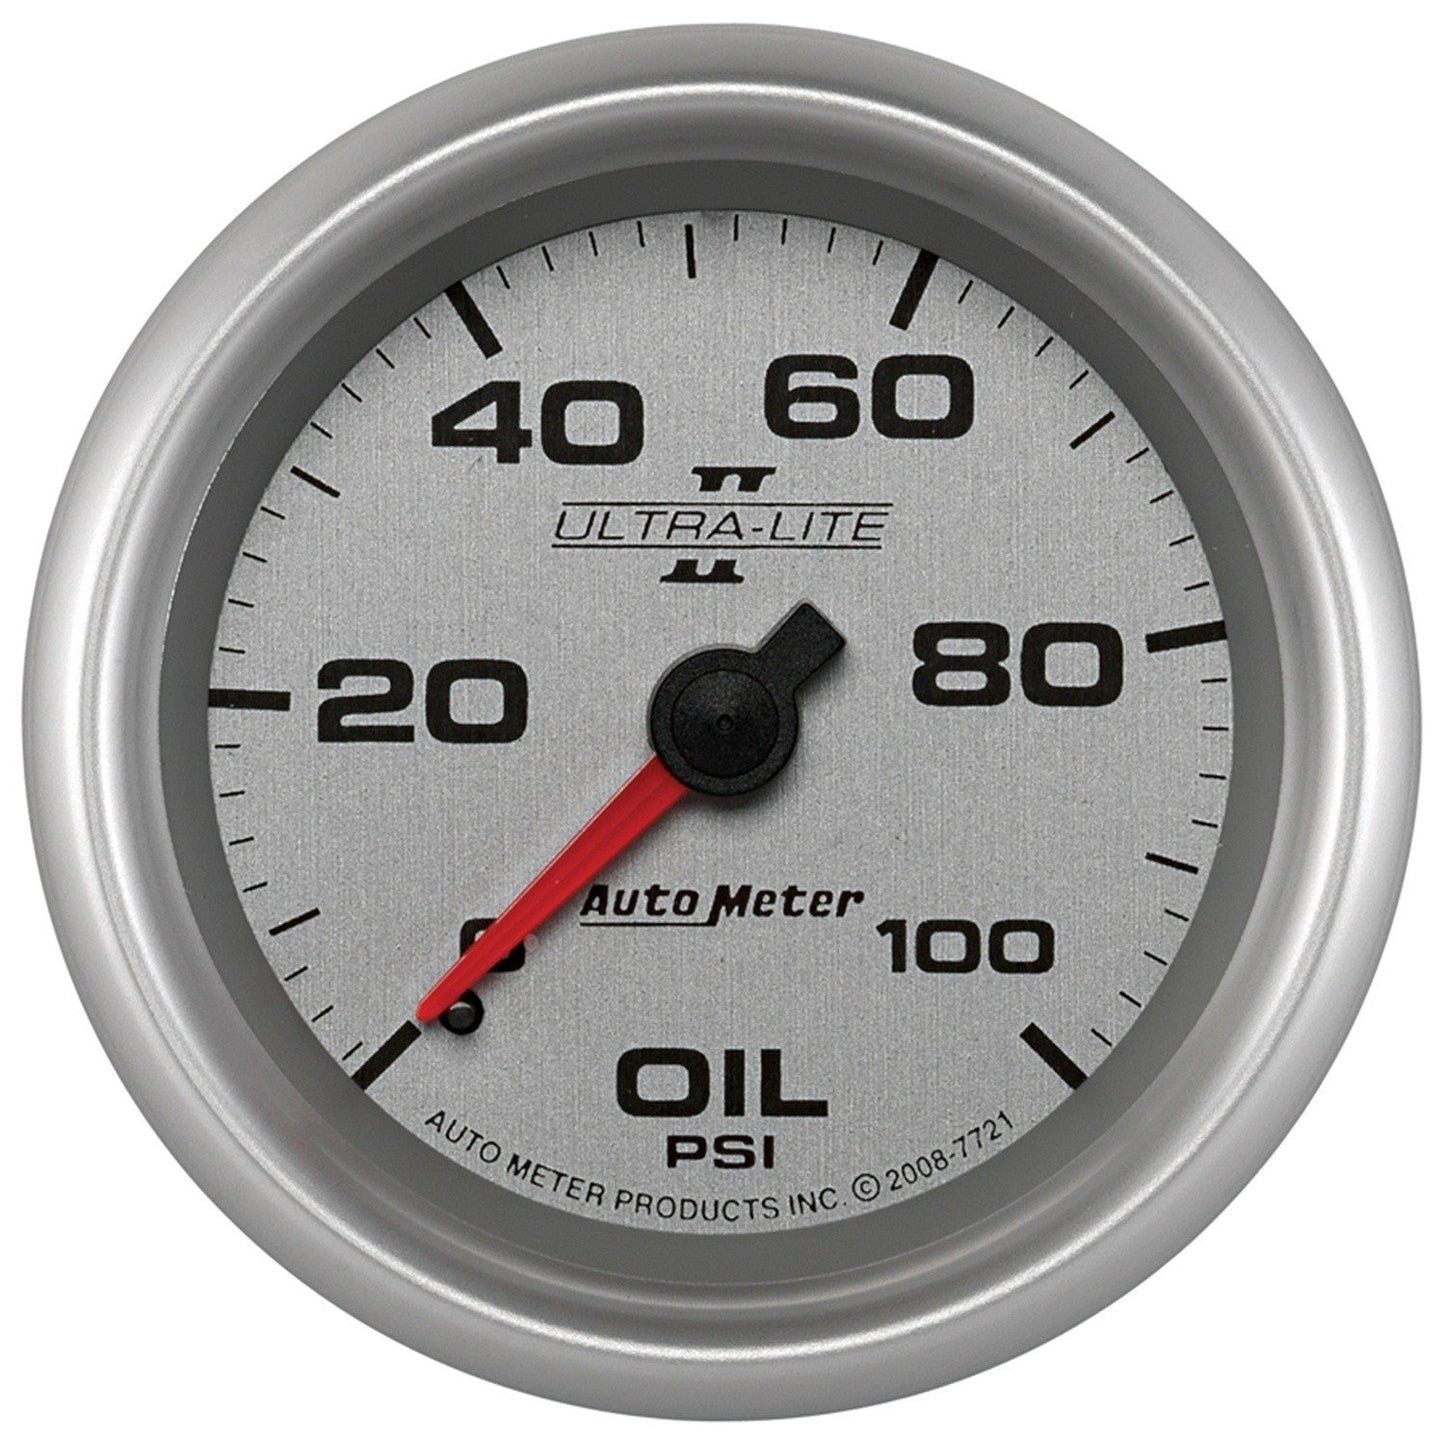 AutoMeter - 2-5/8" OIL PRESSURE, 0-100 PSI, MECHANICAL, ULTRA-LITE II (7721)